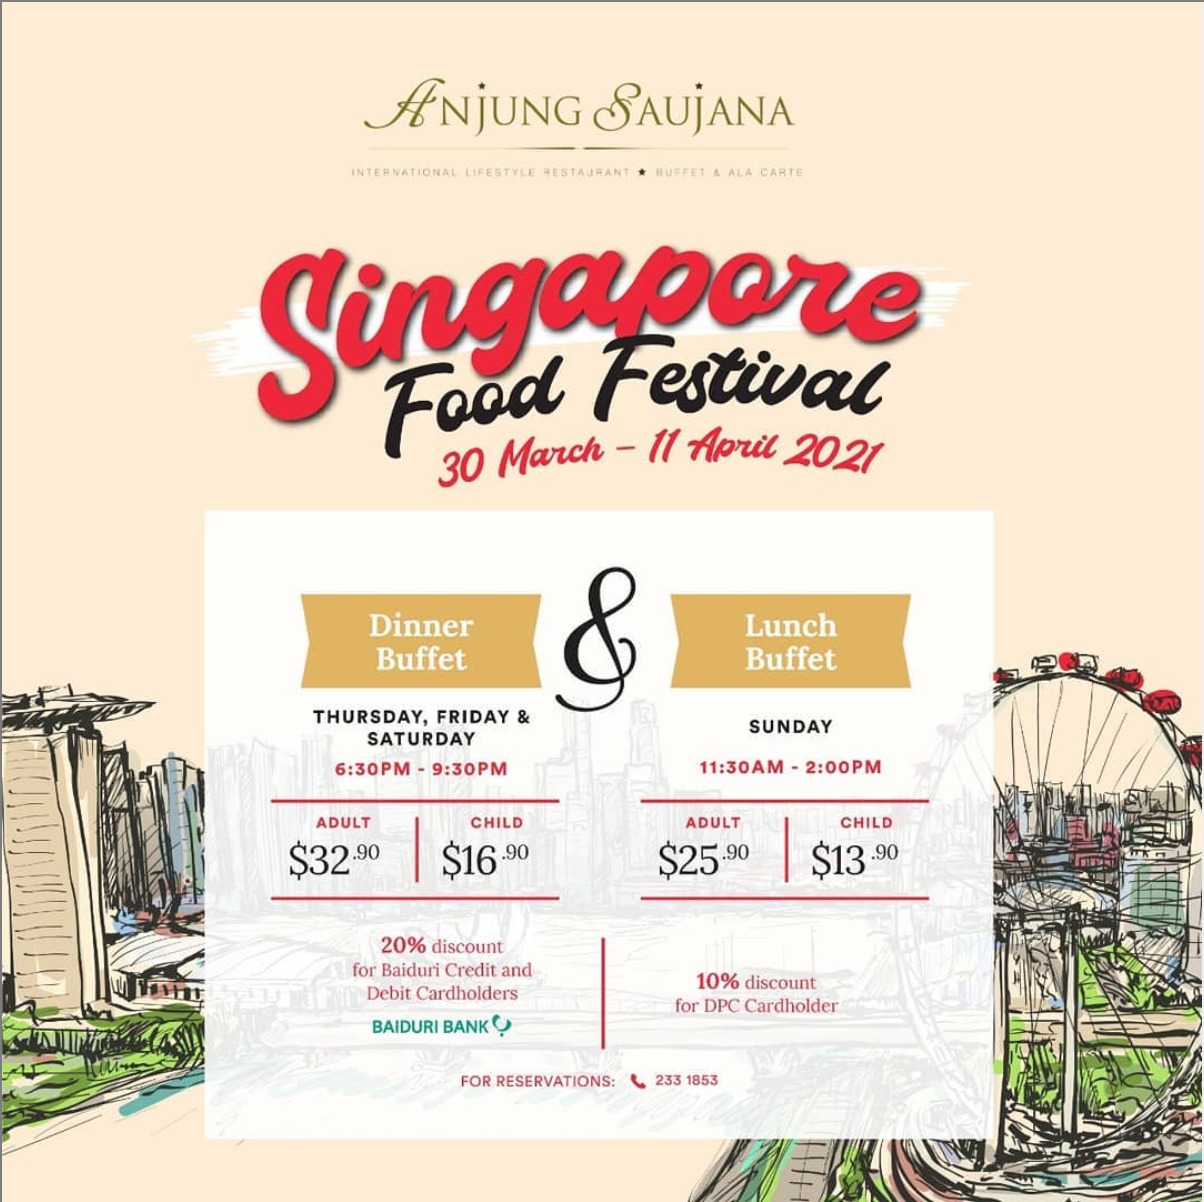 Singapore Food Festival Brunei Tourism